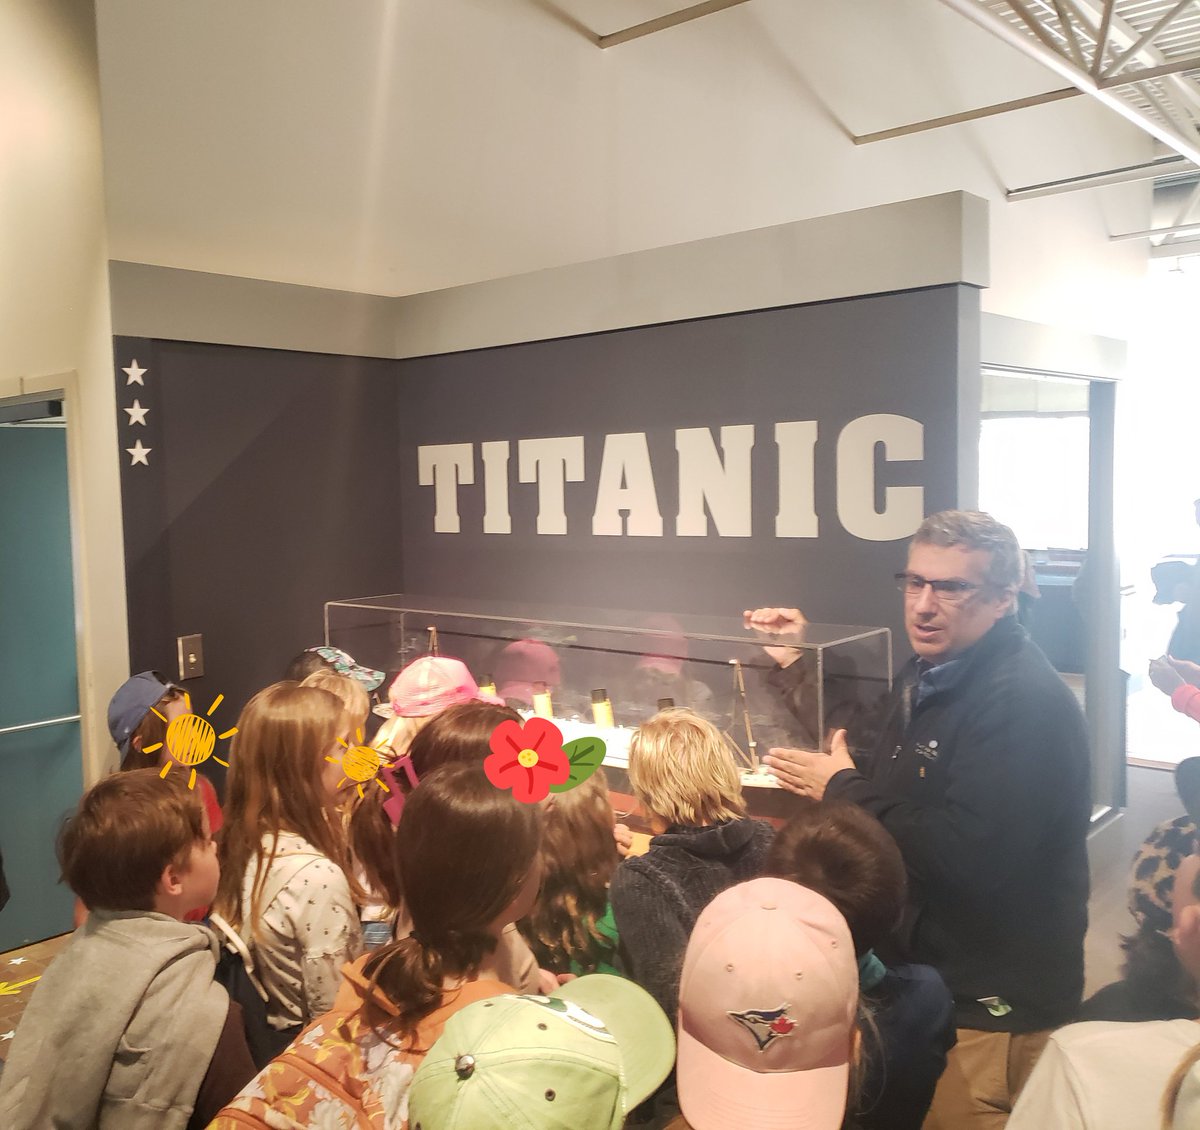 4/5T had a great visit to the Maritime Museum of the Atlantic today! Merci à Jason de nous avoir accompagné dans la découverte de l'histoire des provinces Maritimes @LeMarchantElem